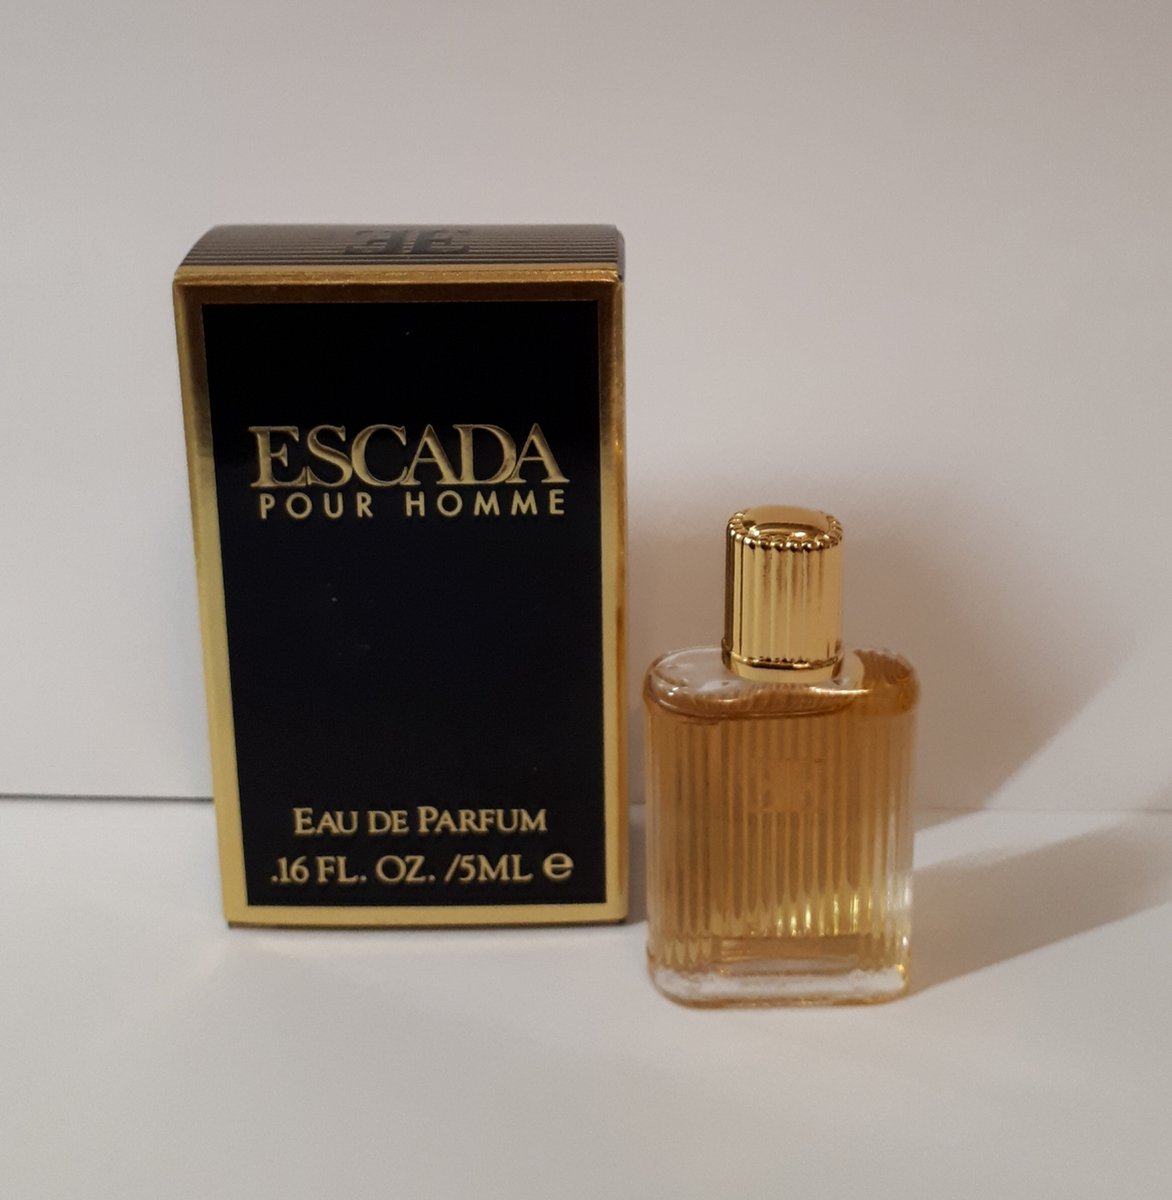 ESCADA Pour Homme, Eau de Parfum, 5ml - mini